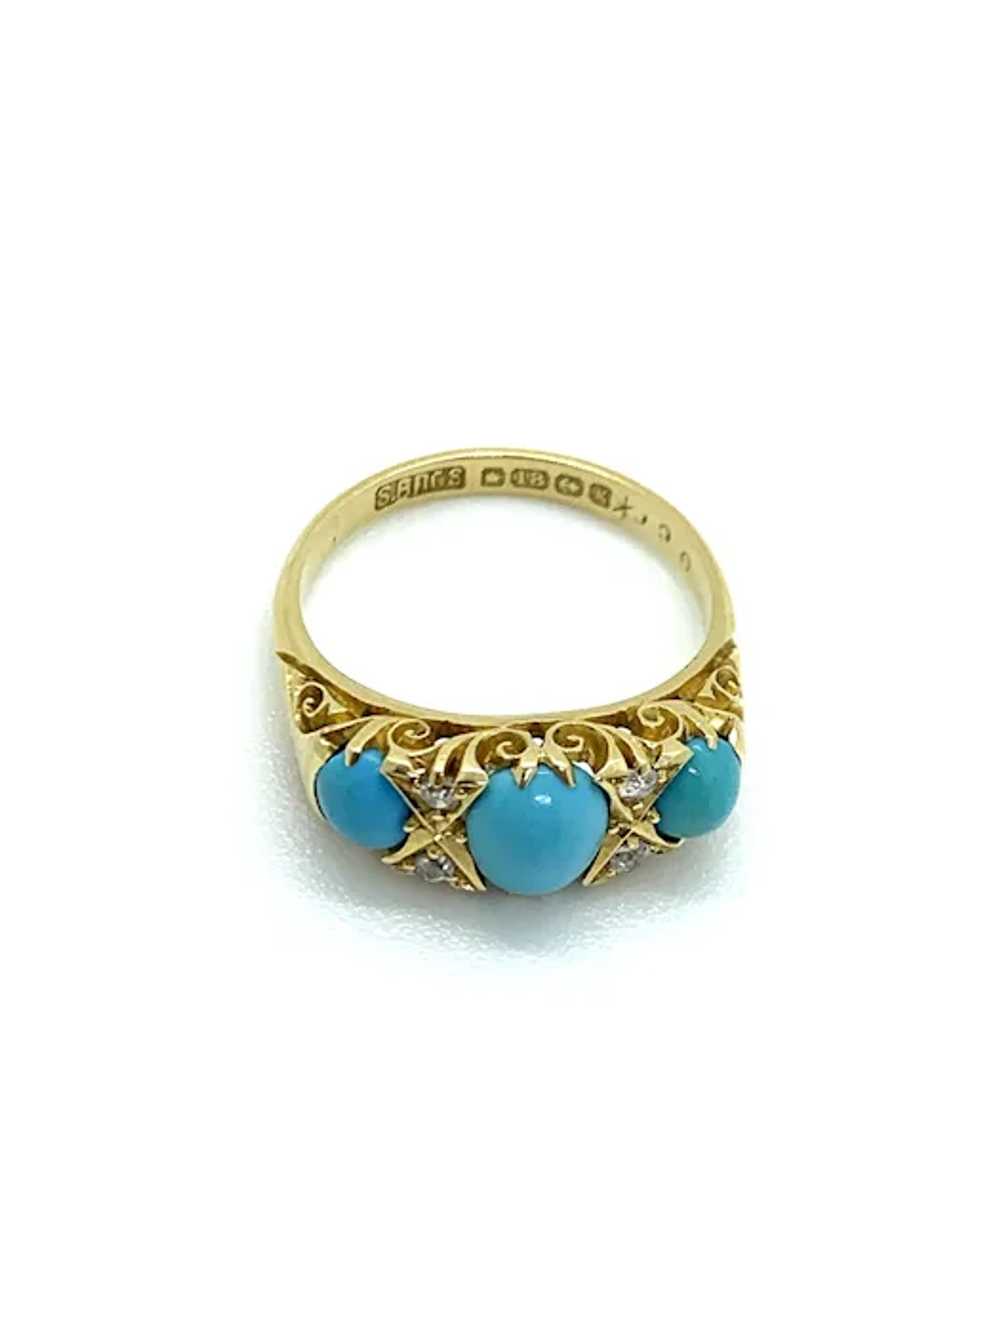 Edwardian 18ct Gold Turquoise & Diamond Set Ring - image 3